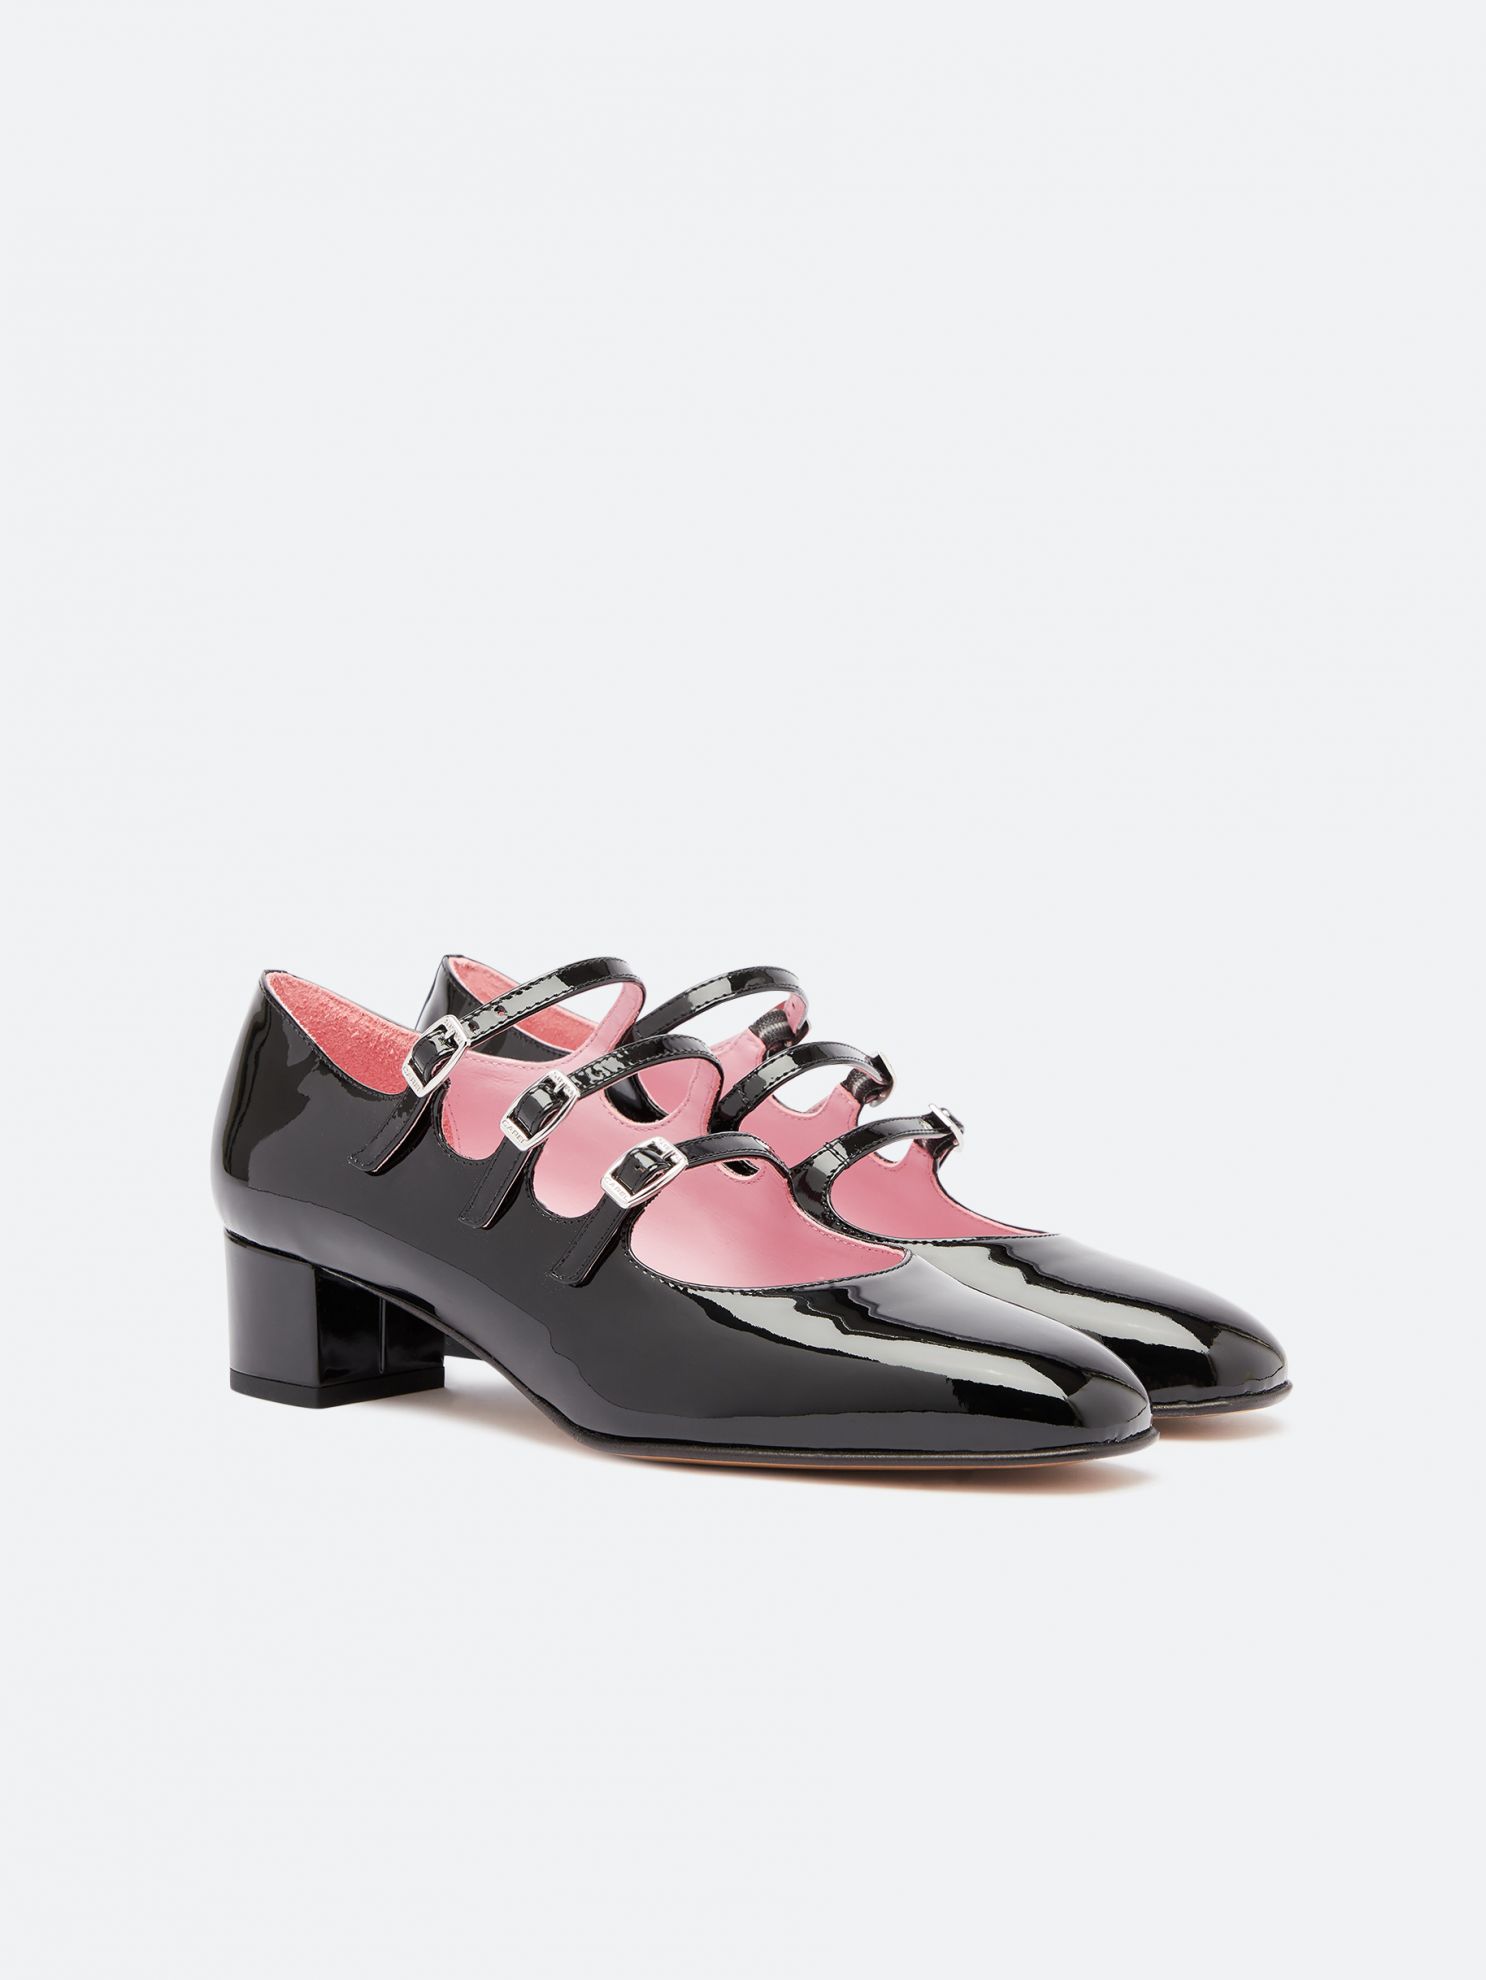 KINA black patent leather Mary Janes pumps | Carel Paris Shoes